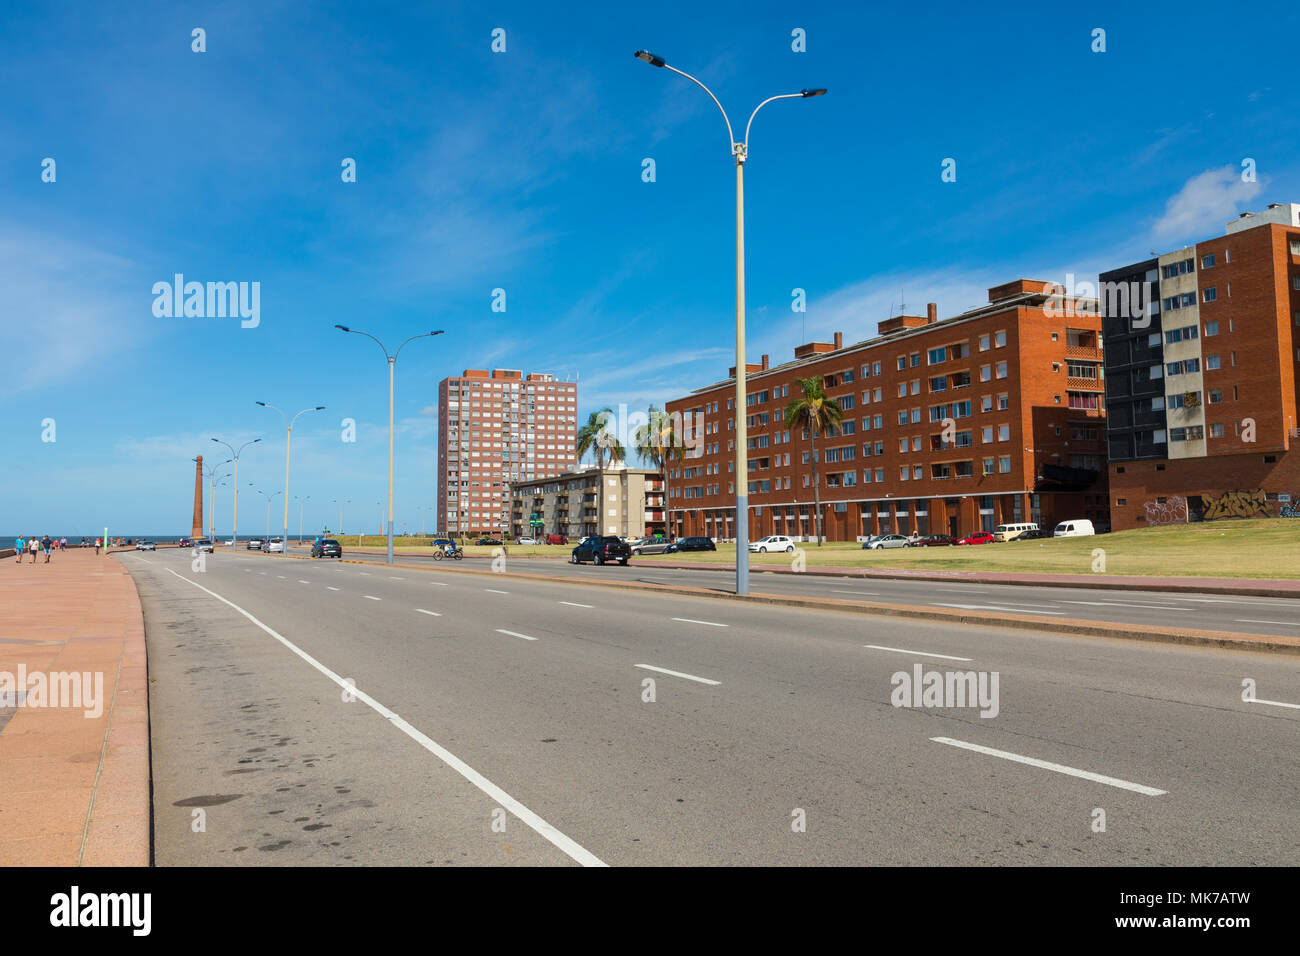 Les bâtiments résidentiels au boulevard à Montevideo, Uruguay. Montevideo est la capitale et la plus grande ville d'Uruguay. Banque D'Images